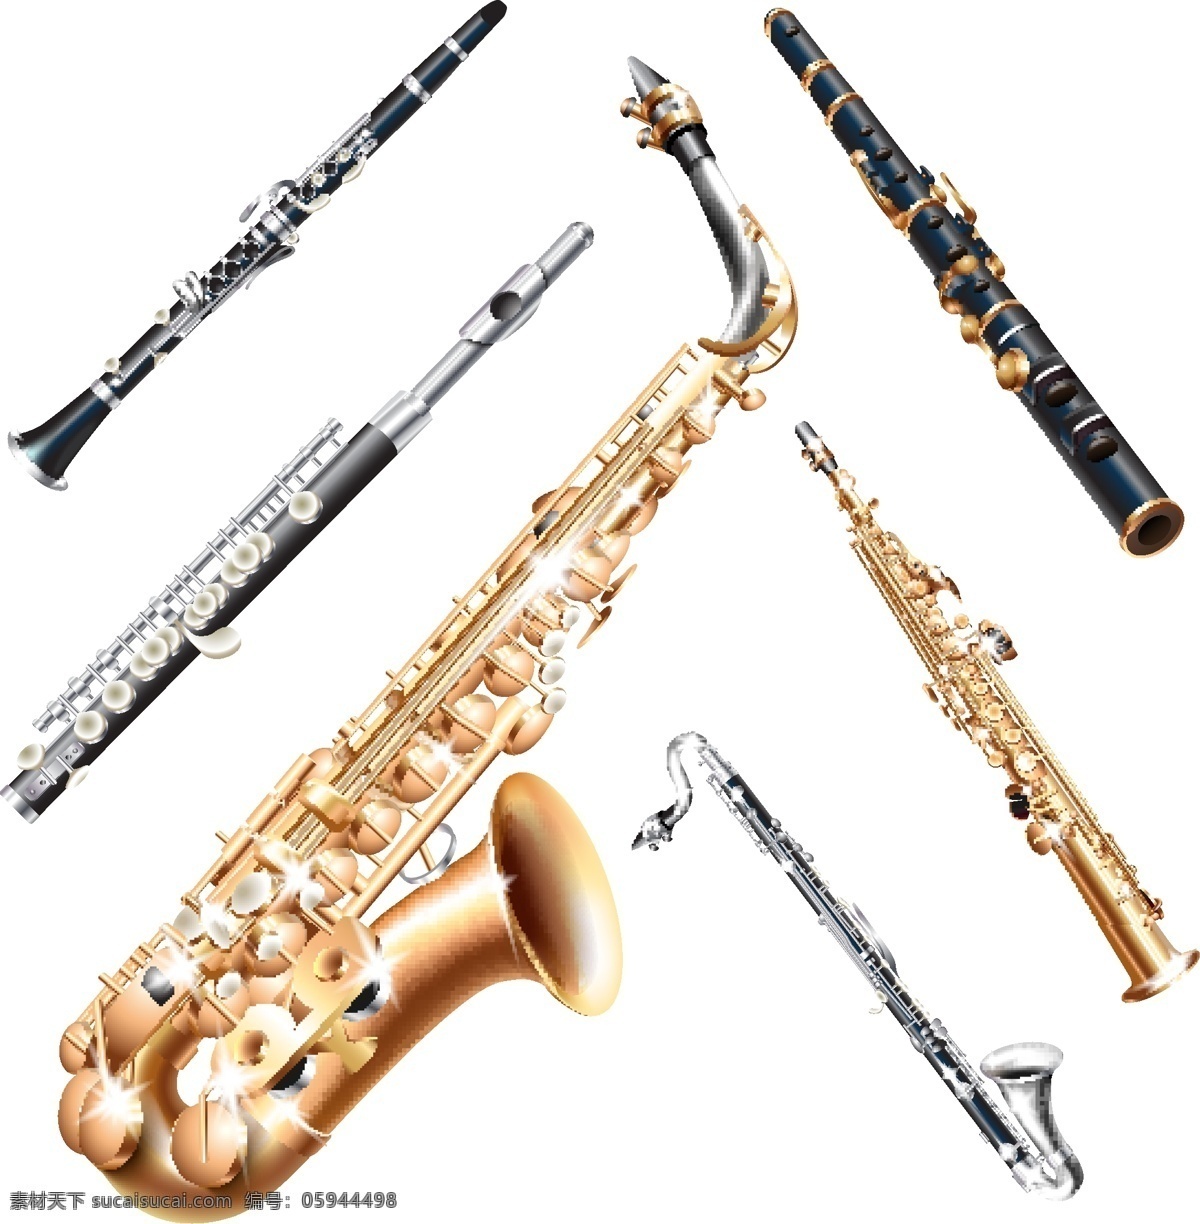 萨克斯 管乐 乐器 管乐乐器 萨克斯风 黑管 长笛 生活用品 生活百科 矢量